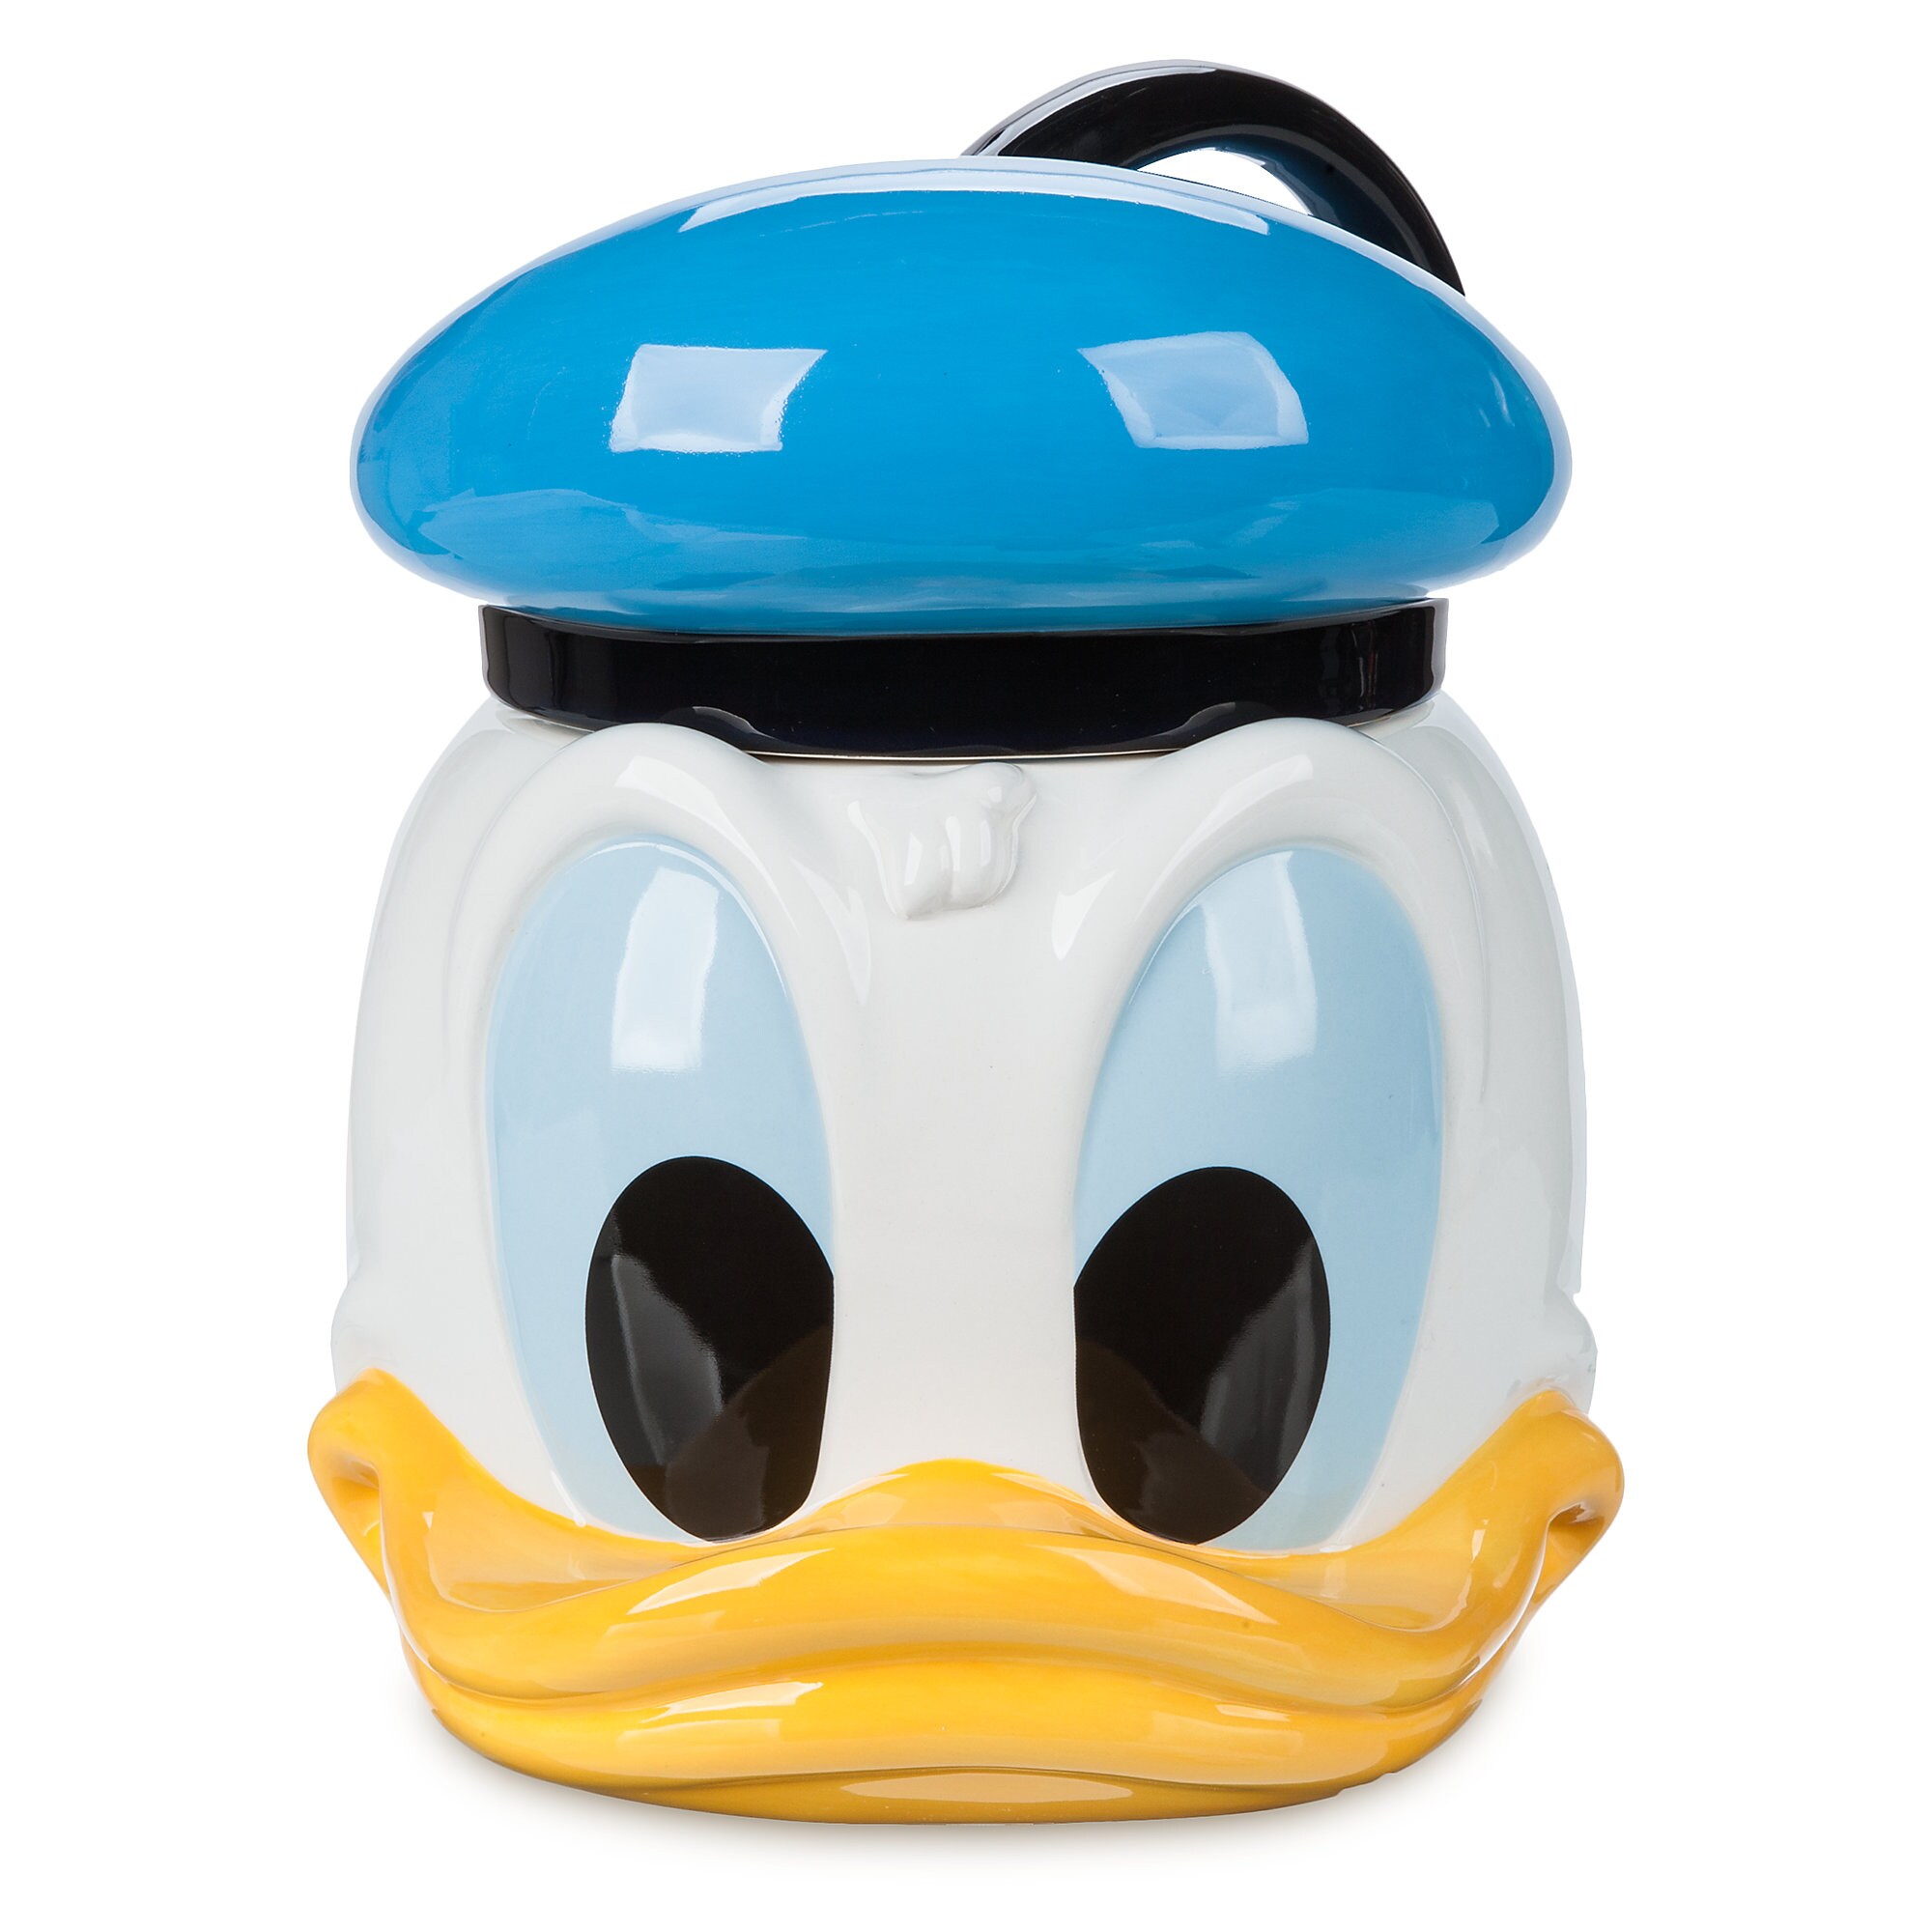 Donald Duck Cookie Jar